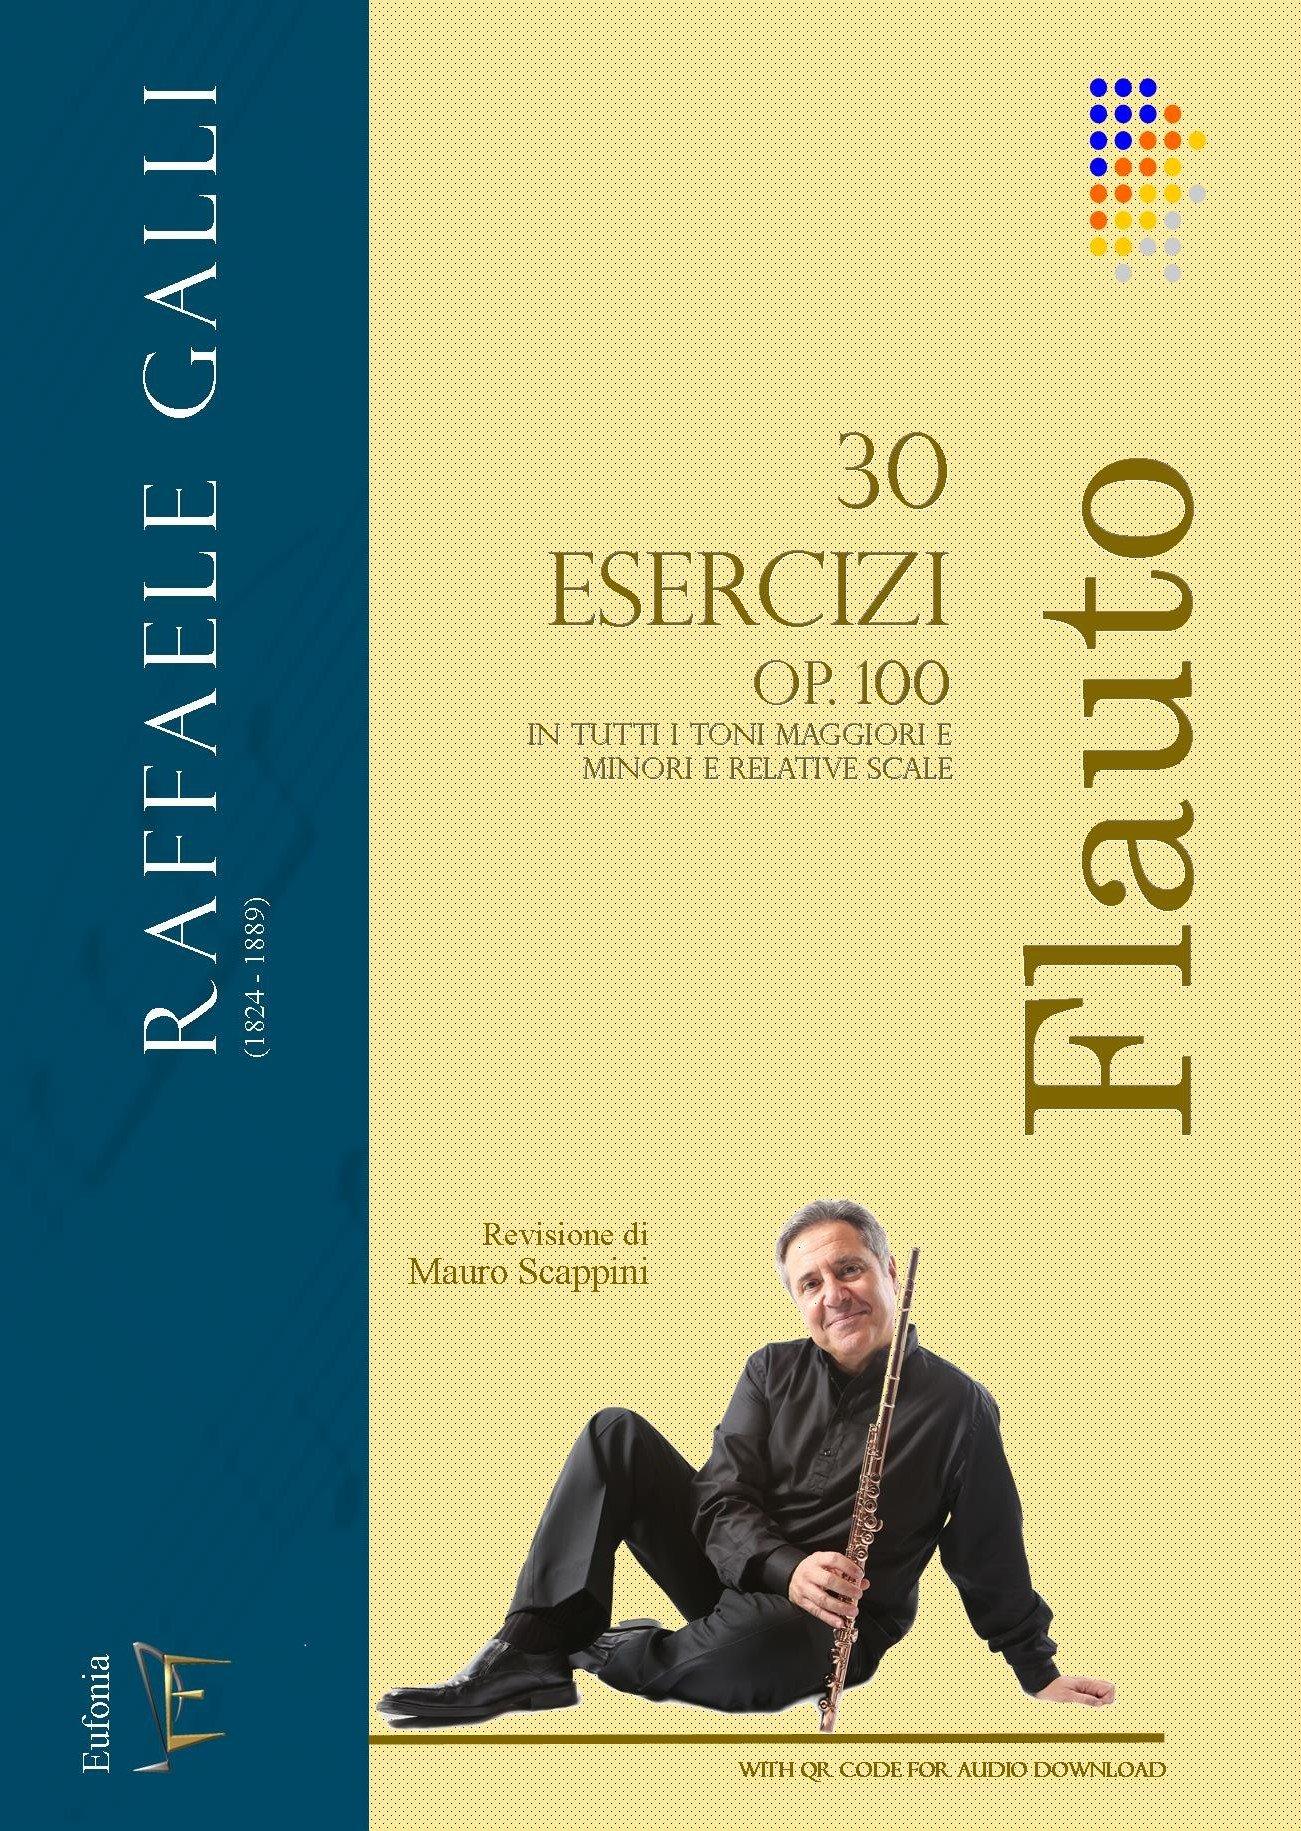 30 Esercizi Op. 100 - Raffaele Galli (Rev. M. Scappini) | Suono Flauti